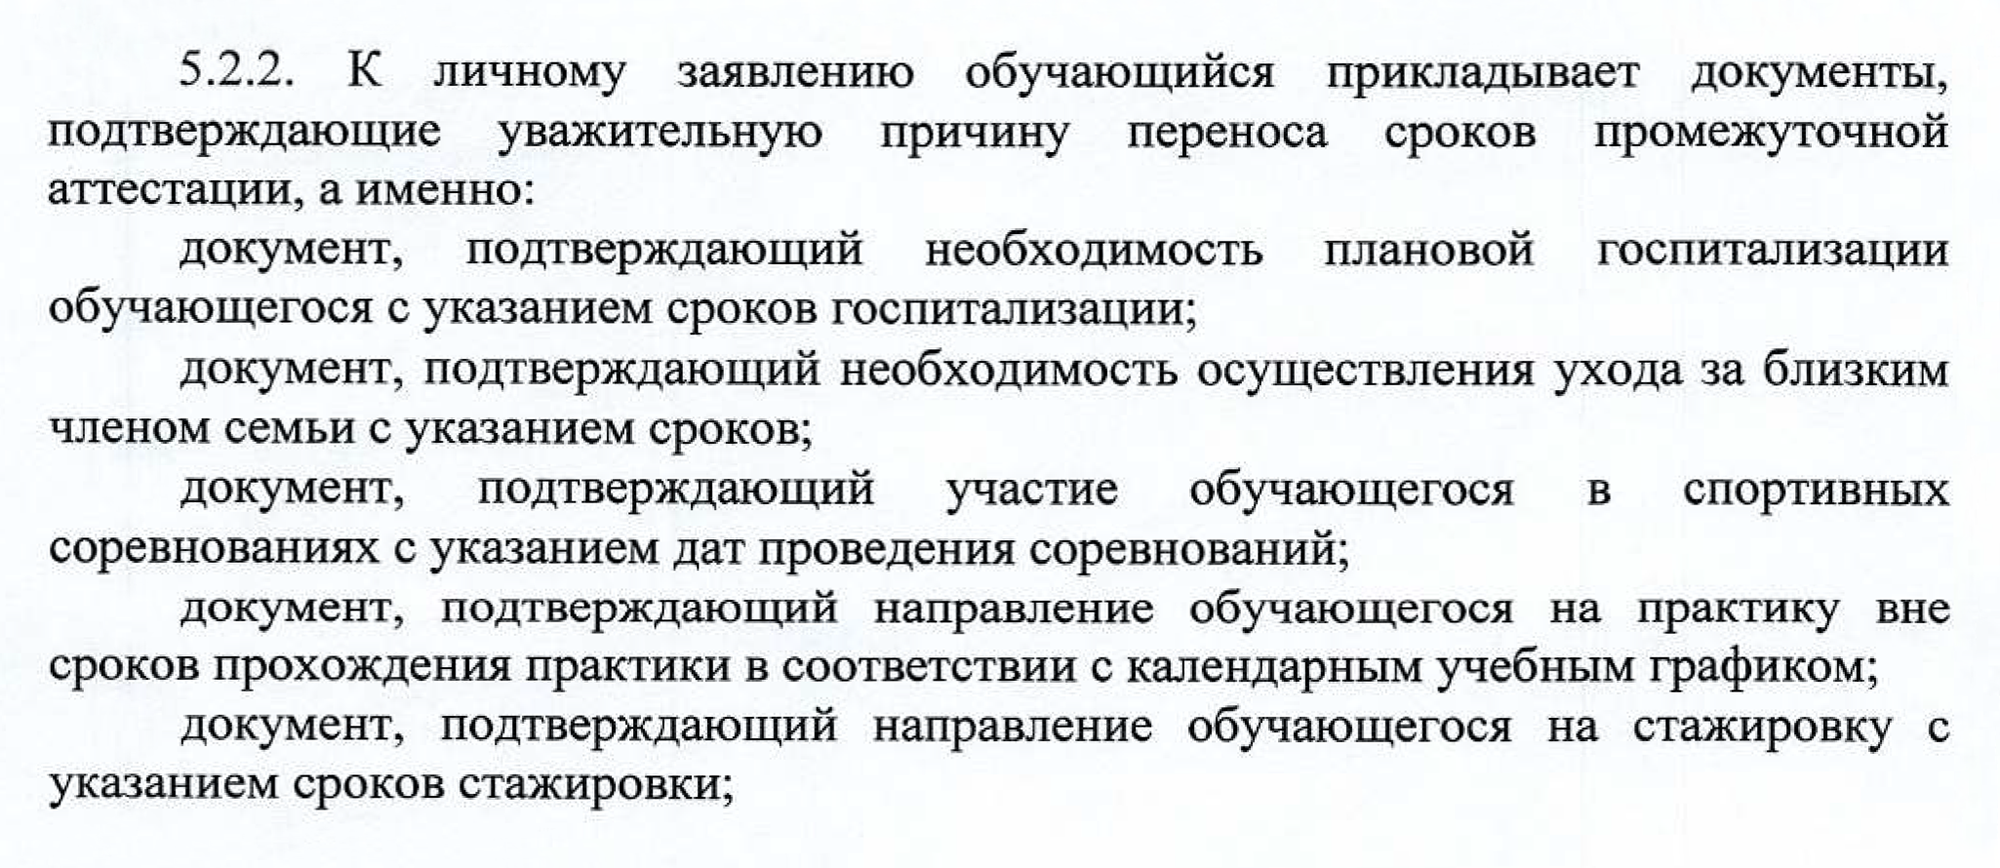 Список документов, которые можно приложить к заявлению о досрочной сдаче сессии в МГПУ. Источник: mgpu.ru